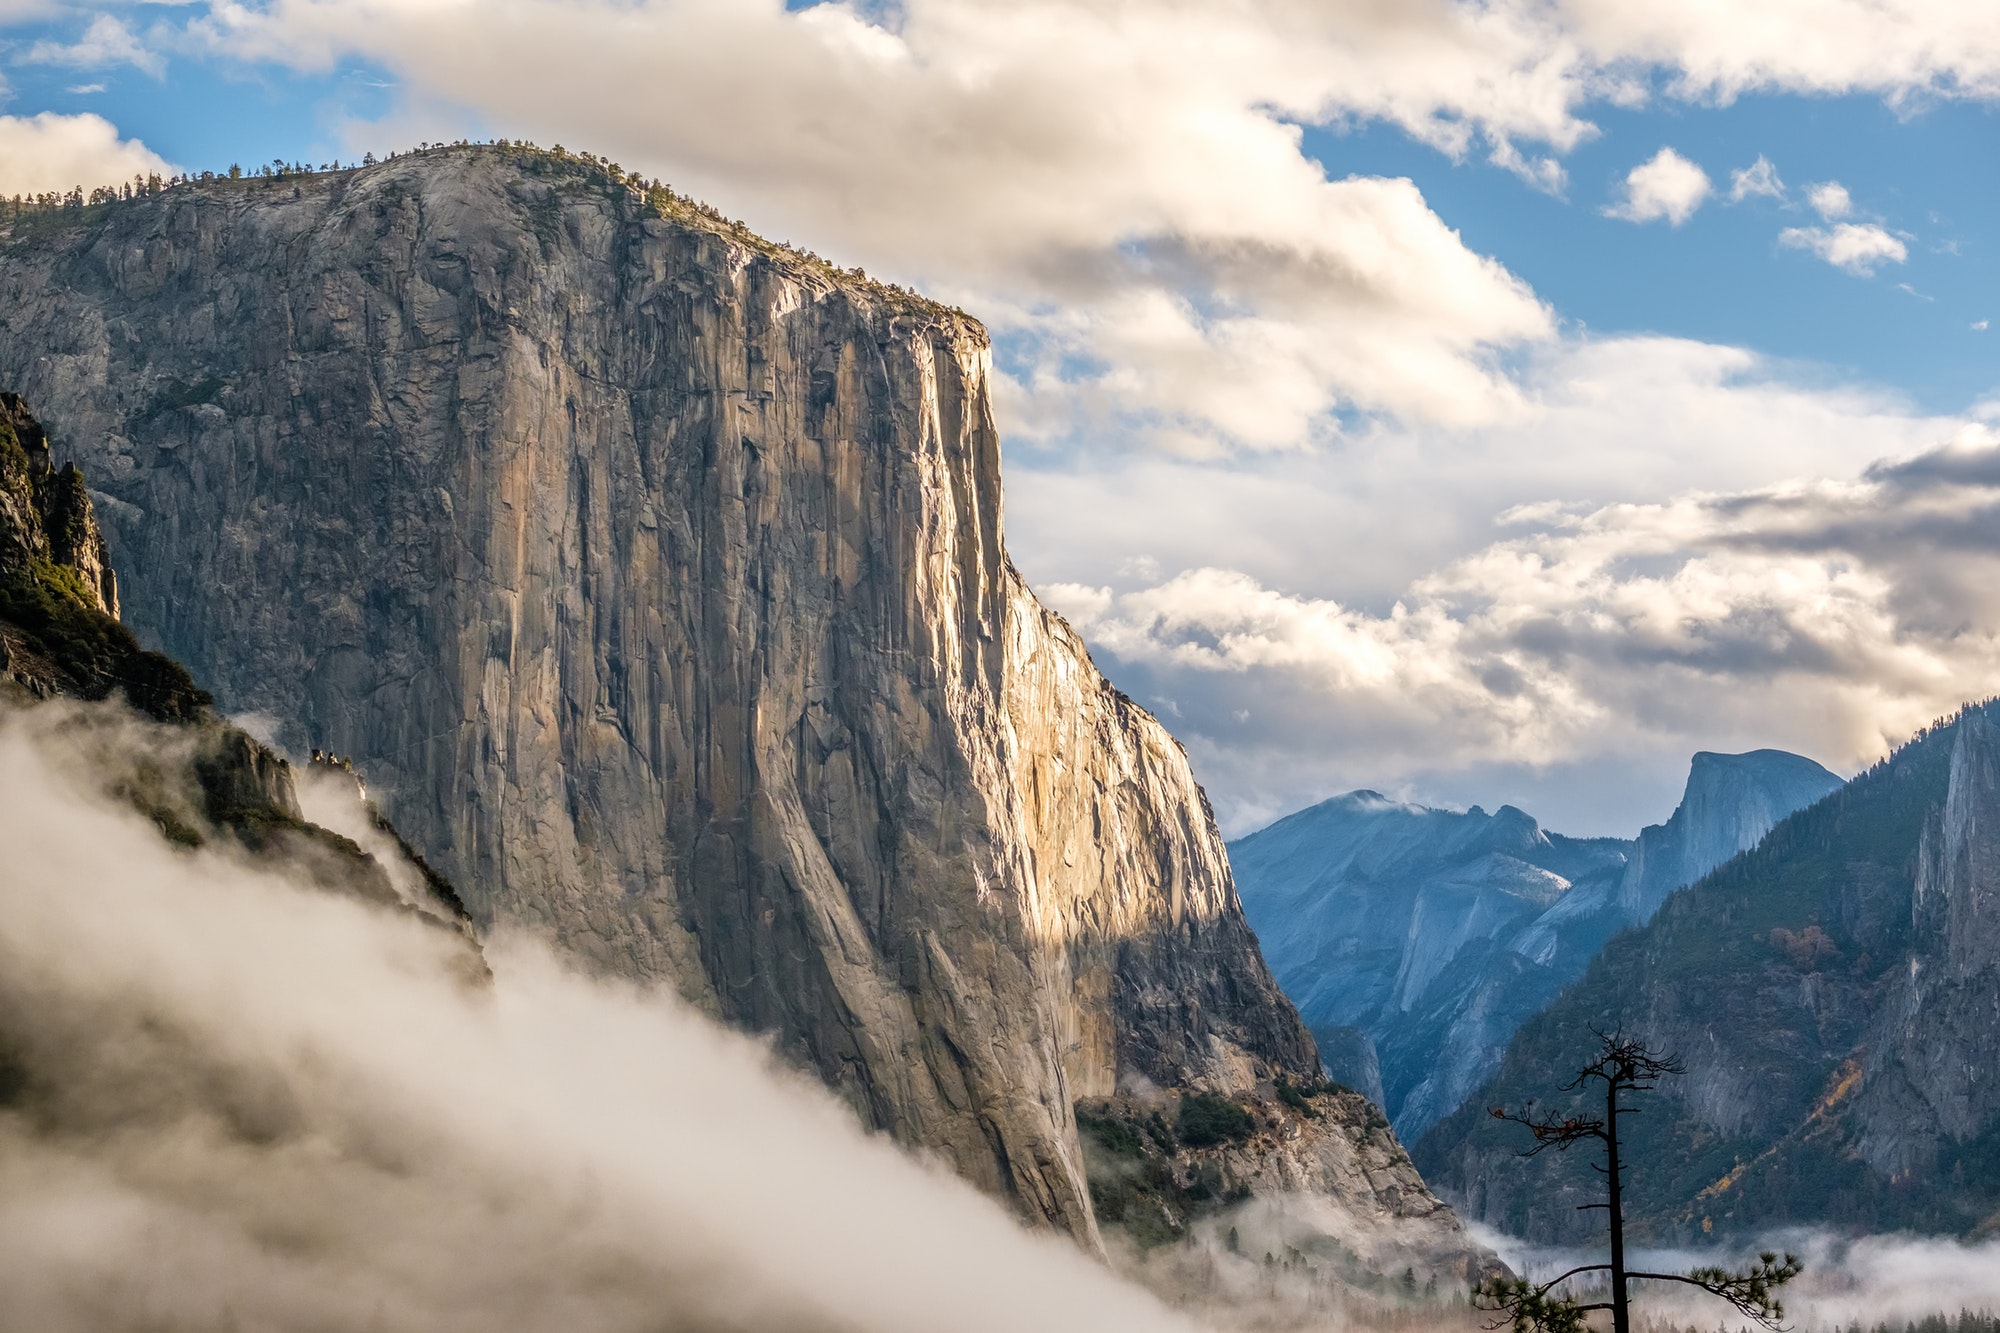 El Capitan rock in Yosemite National Park